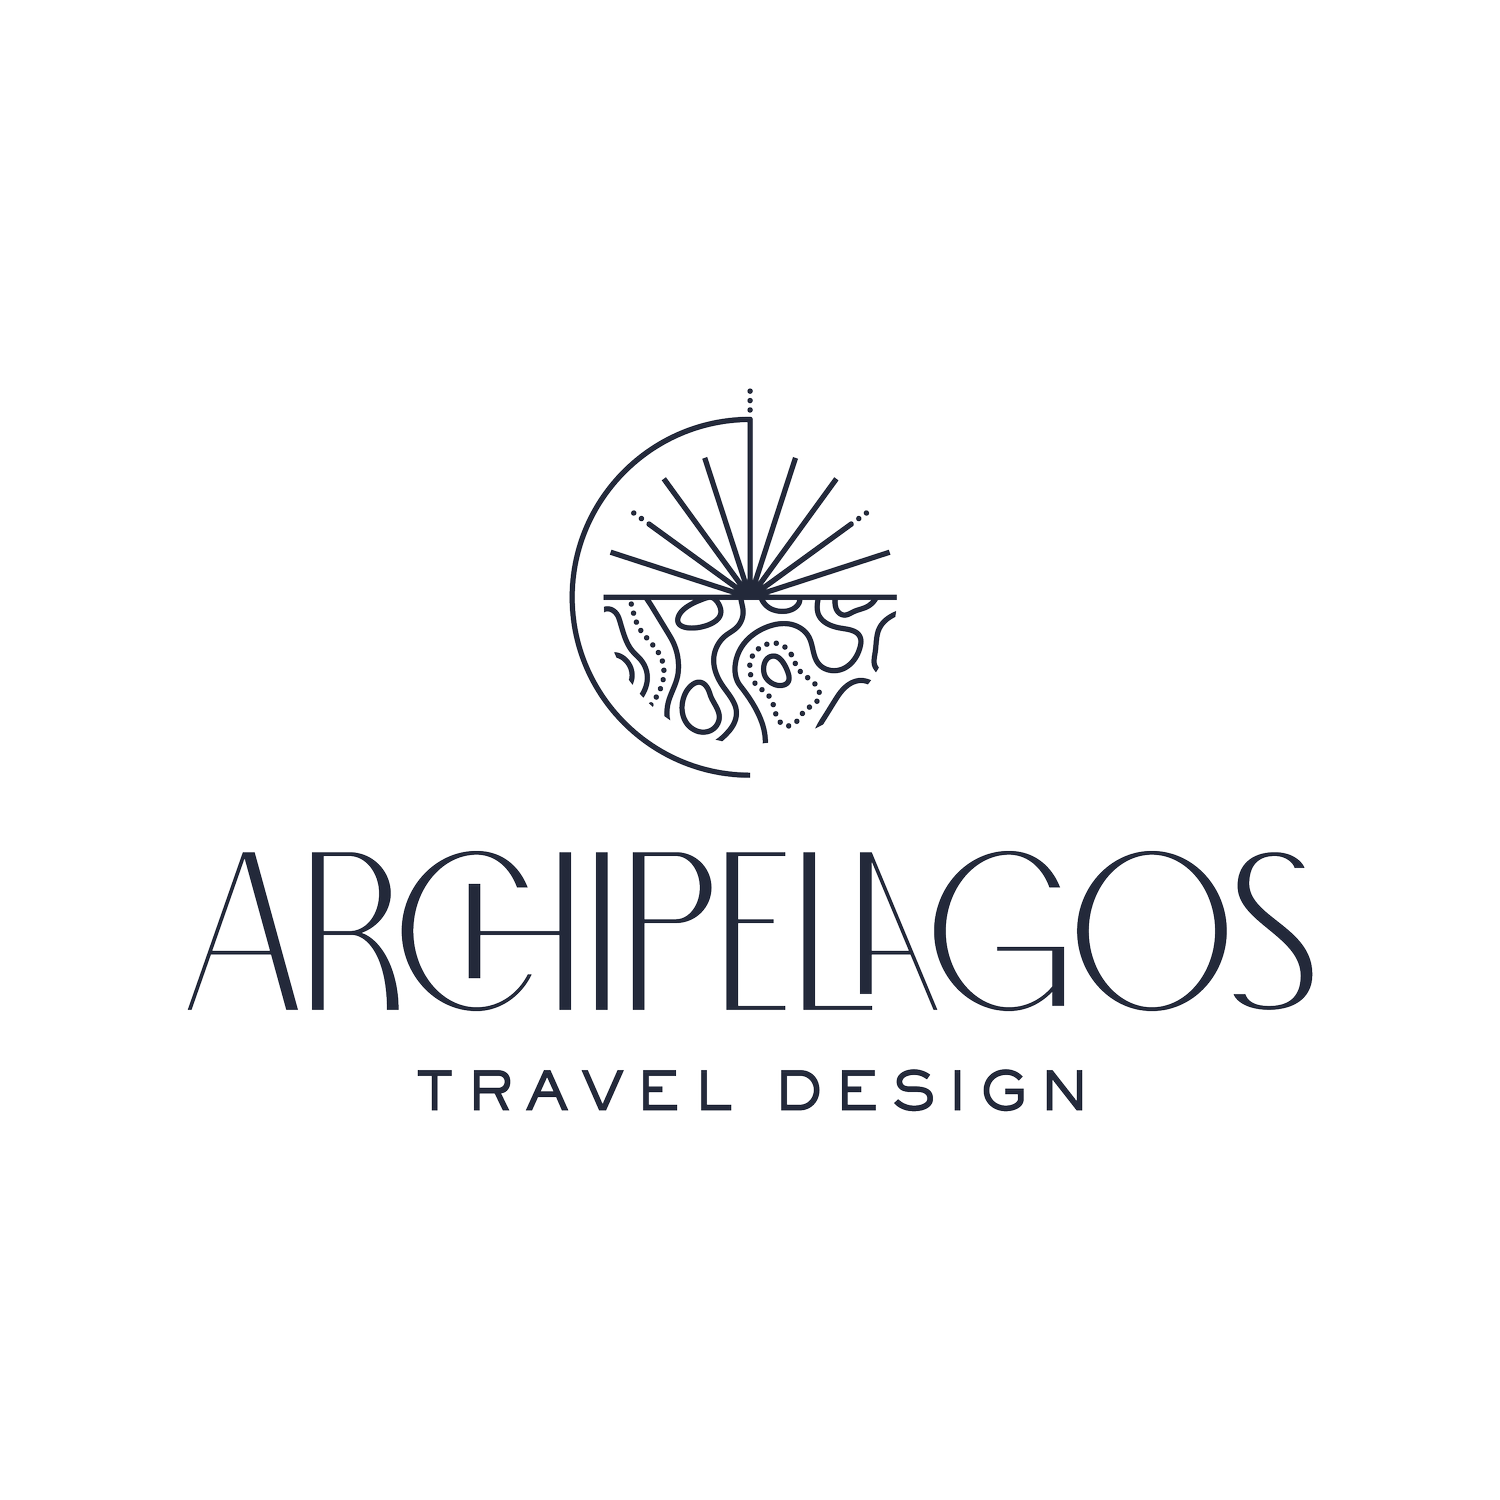 Archipelagos Luxury Travel Design